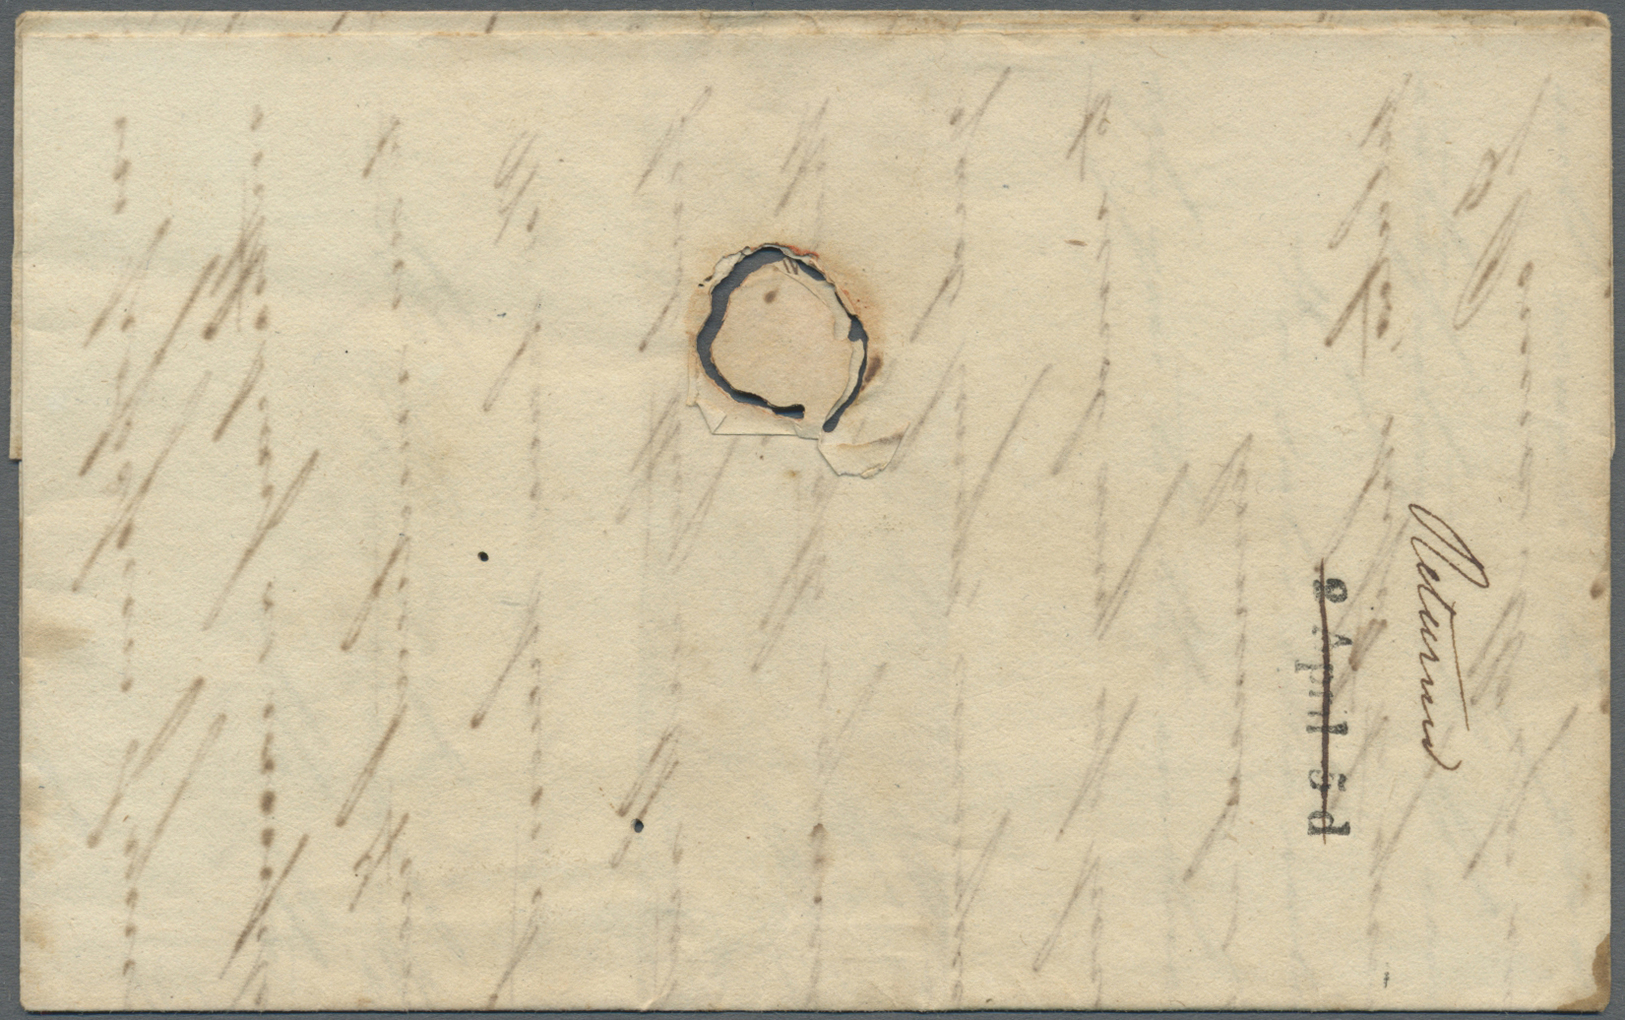 Br Malta - Vorphilatelie: 1838. Envelope (holes) Written From Leghorn Dated '15th March 1838' Addressed To Malta - Malte